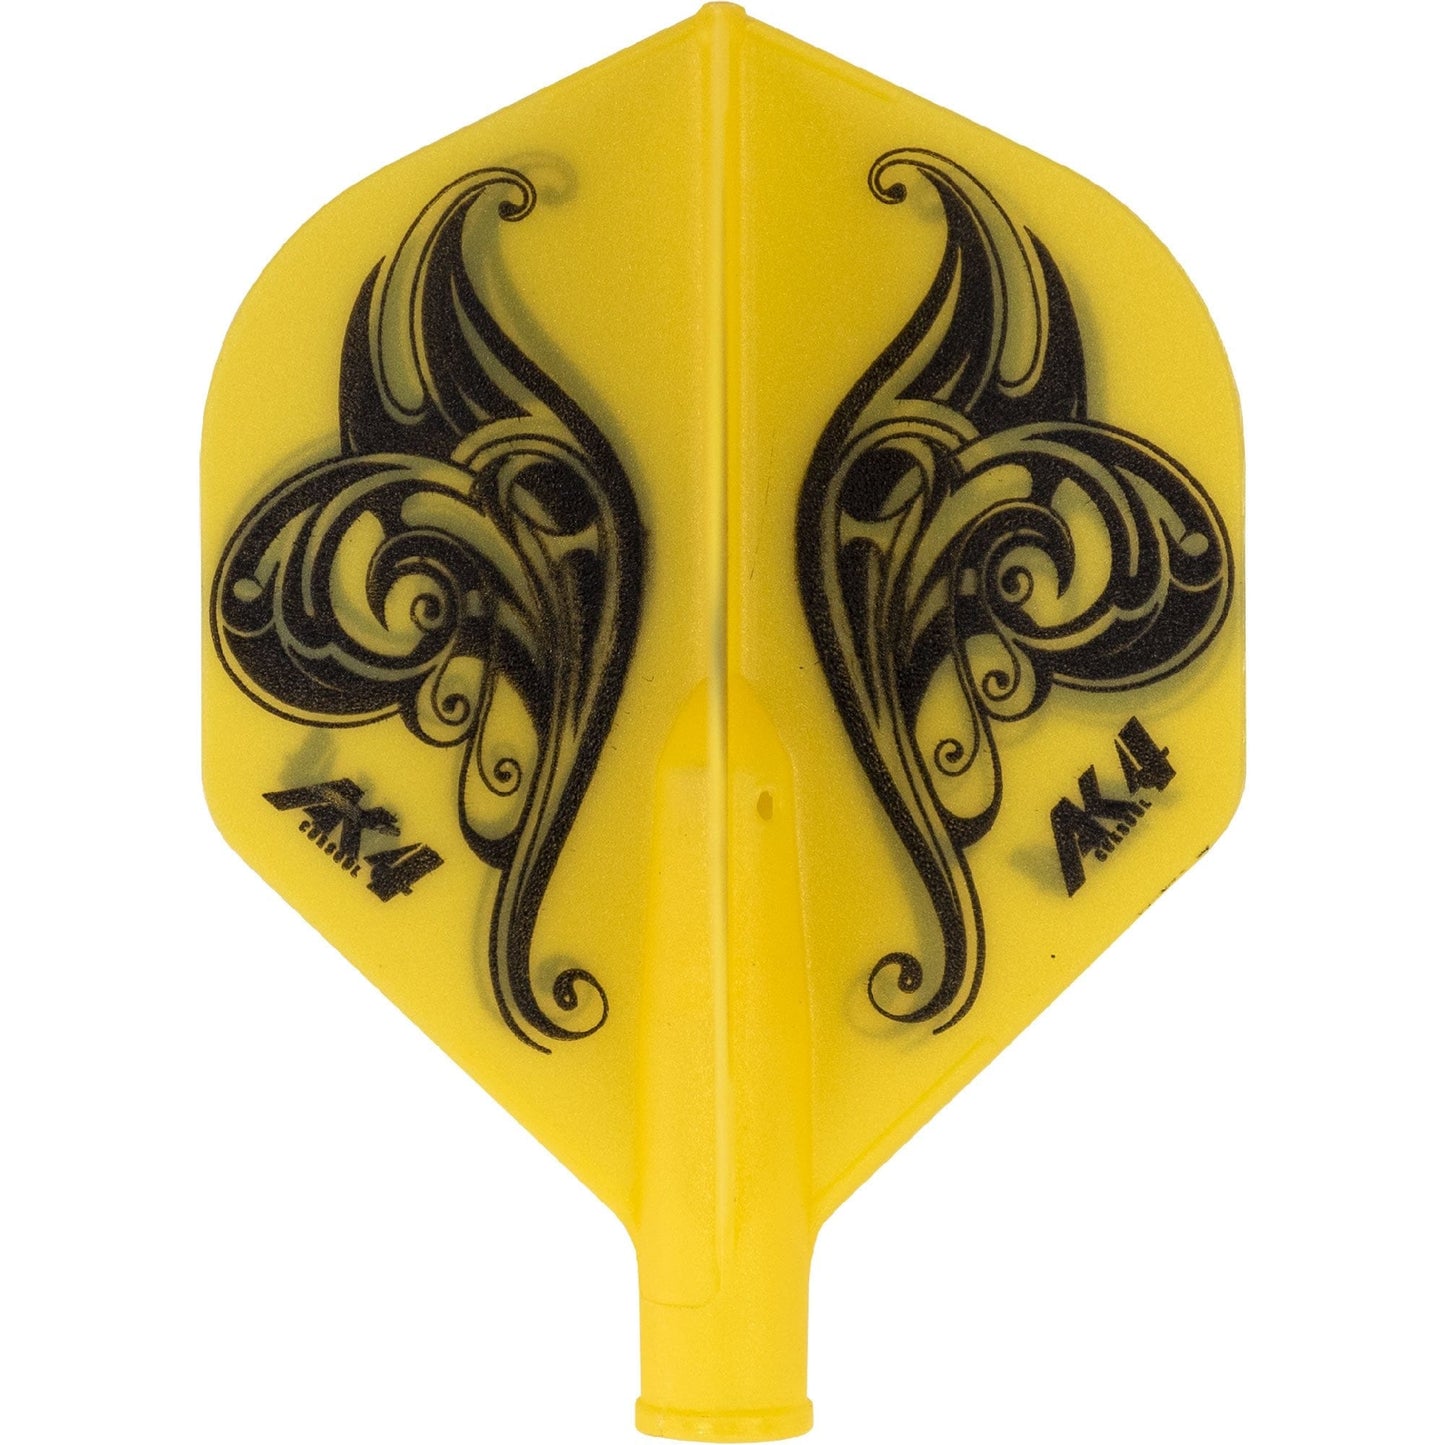 Cuesoul - Tero Flight System - Dart Flights - AK4 - Standard - Flower Yellow